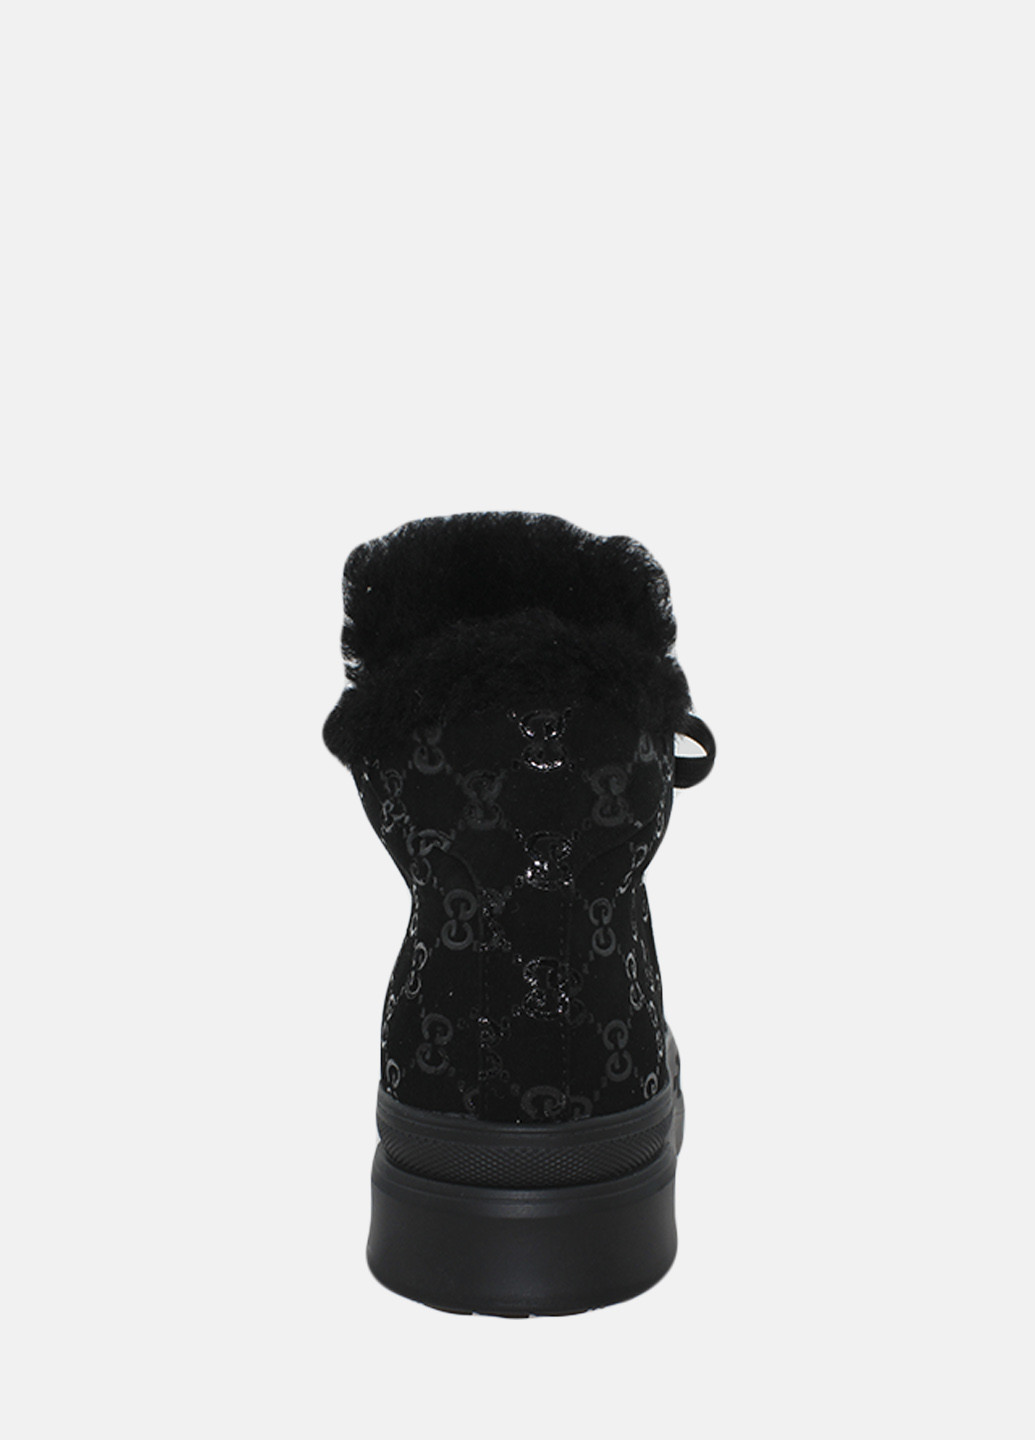 Зимние ботинки re2716-1-11 черный El passo из натуральной замши